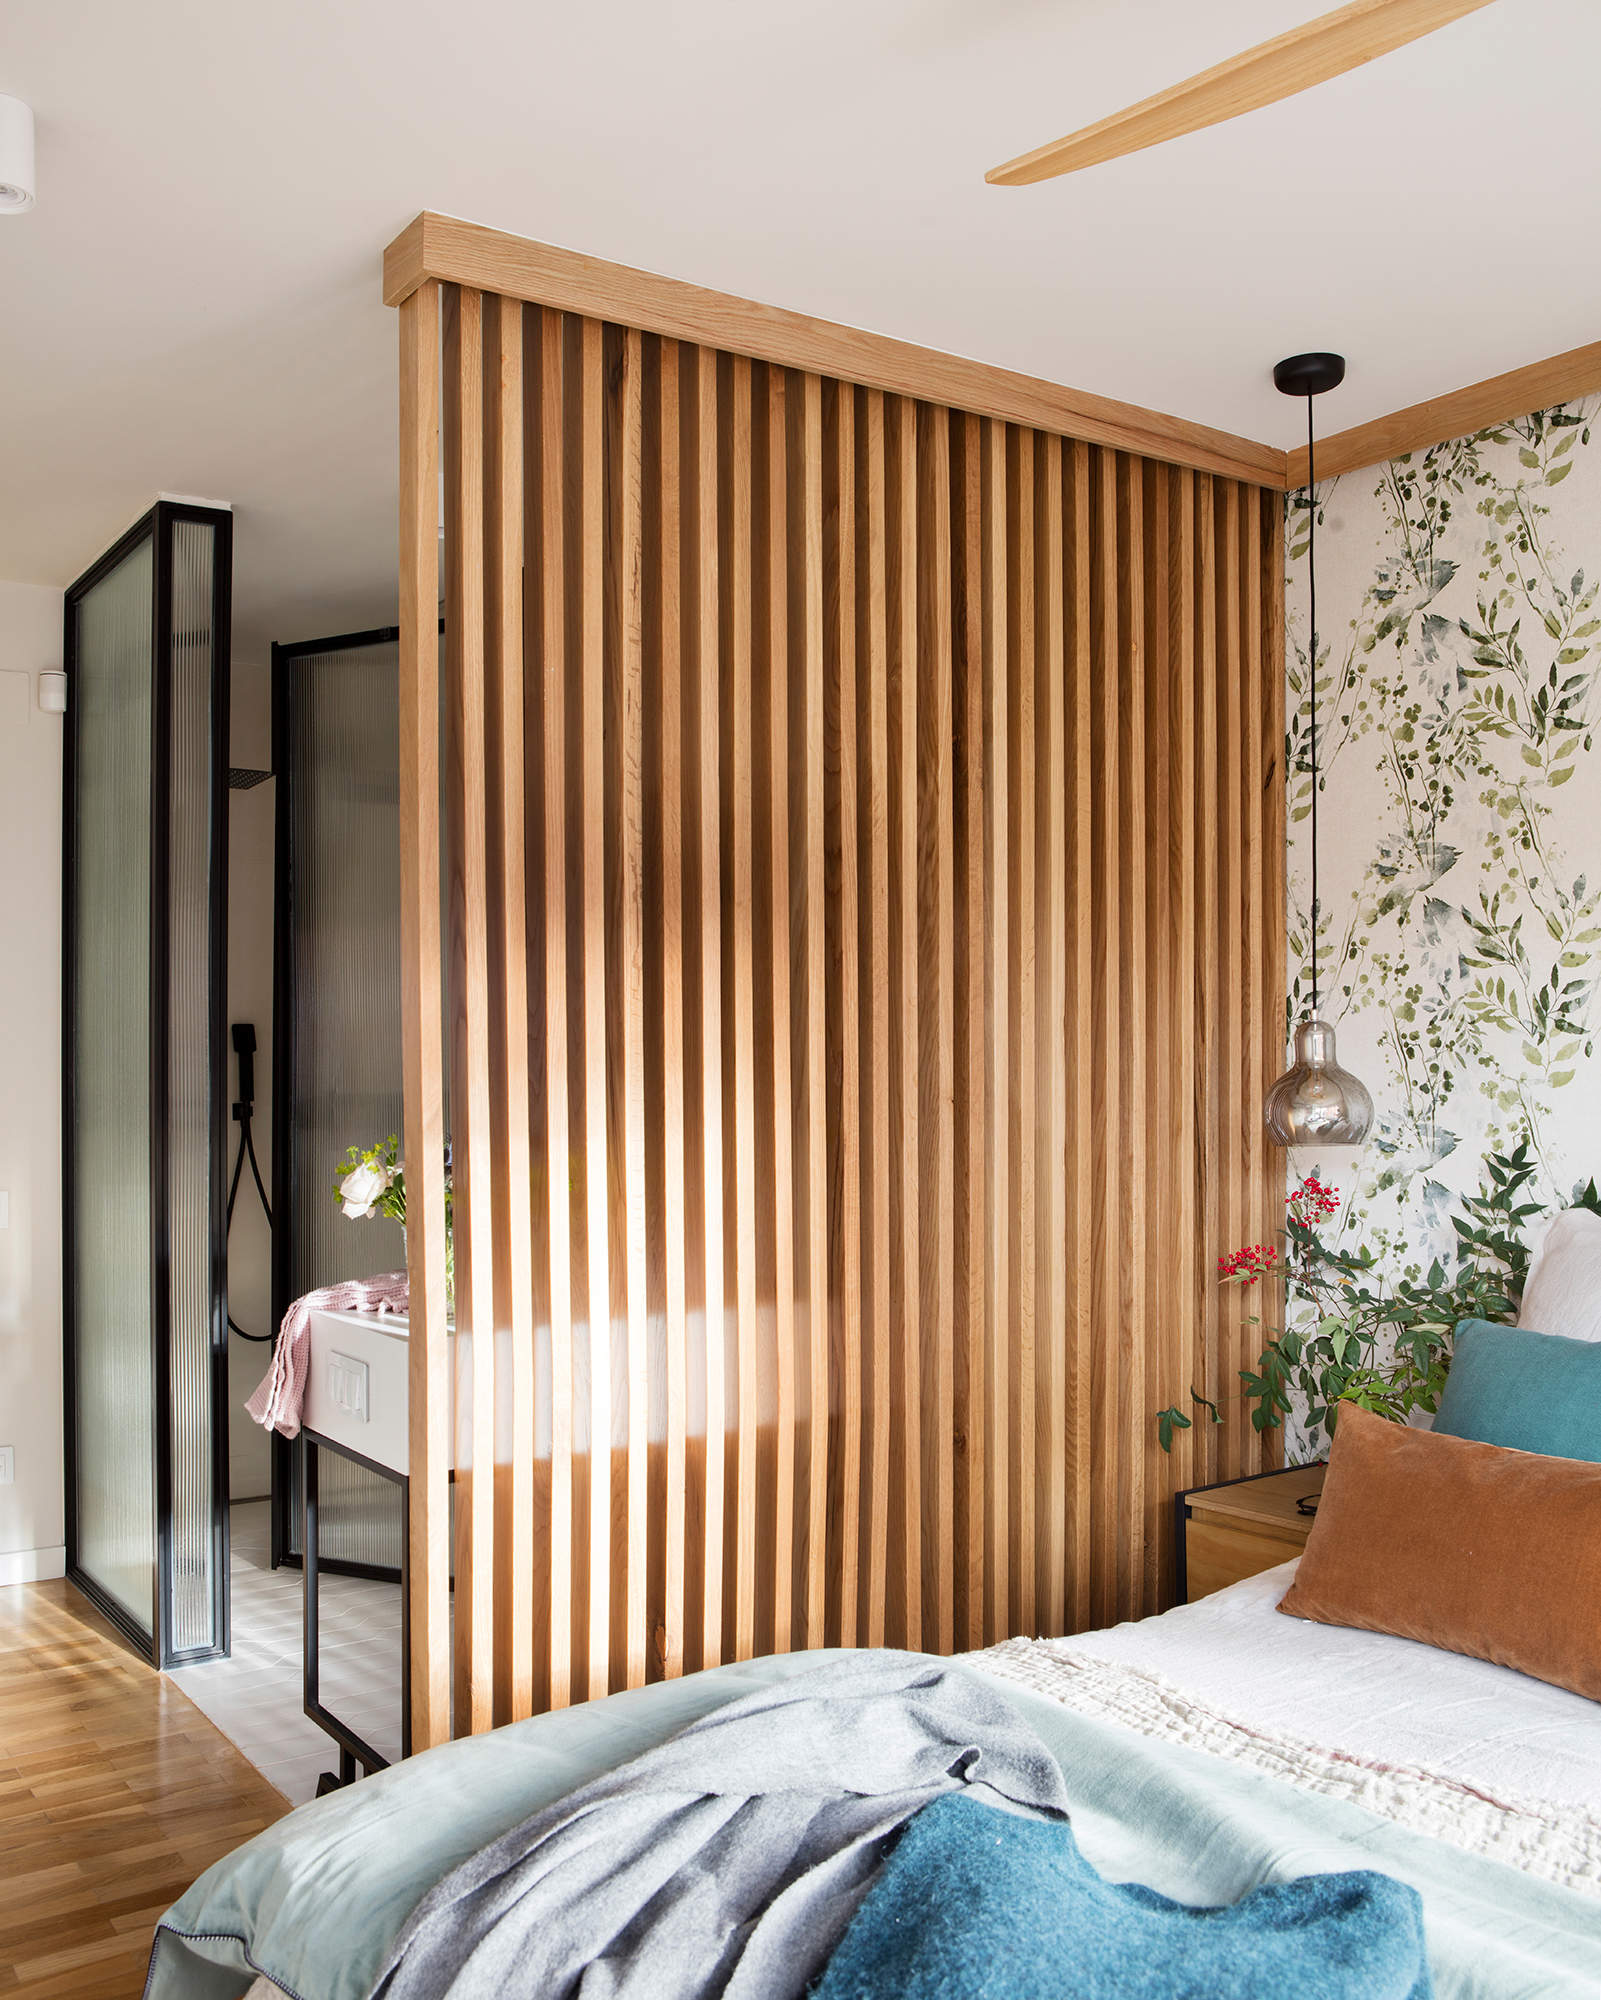 10 ventajas de vestir tu casa con paneles decorativos de pared